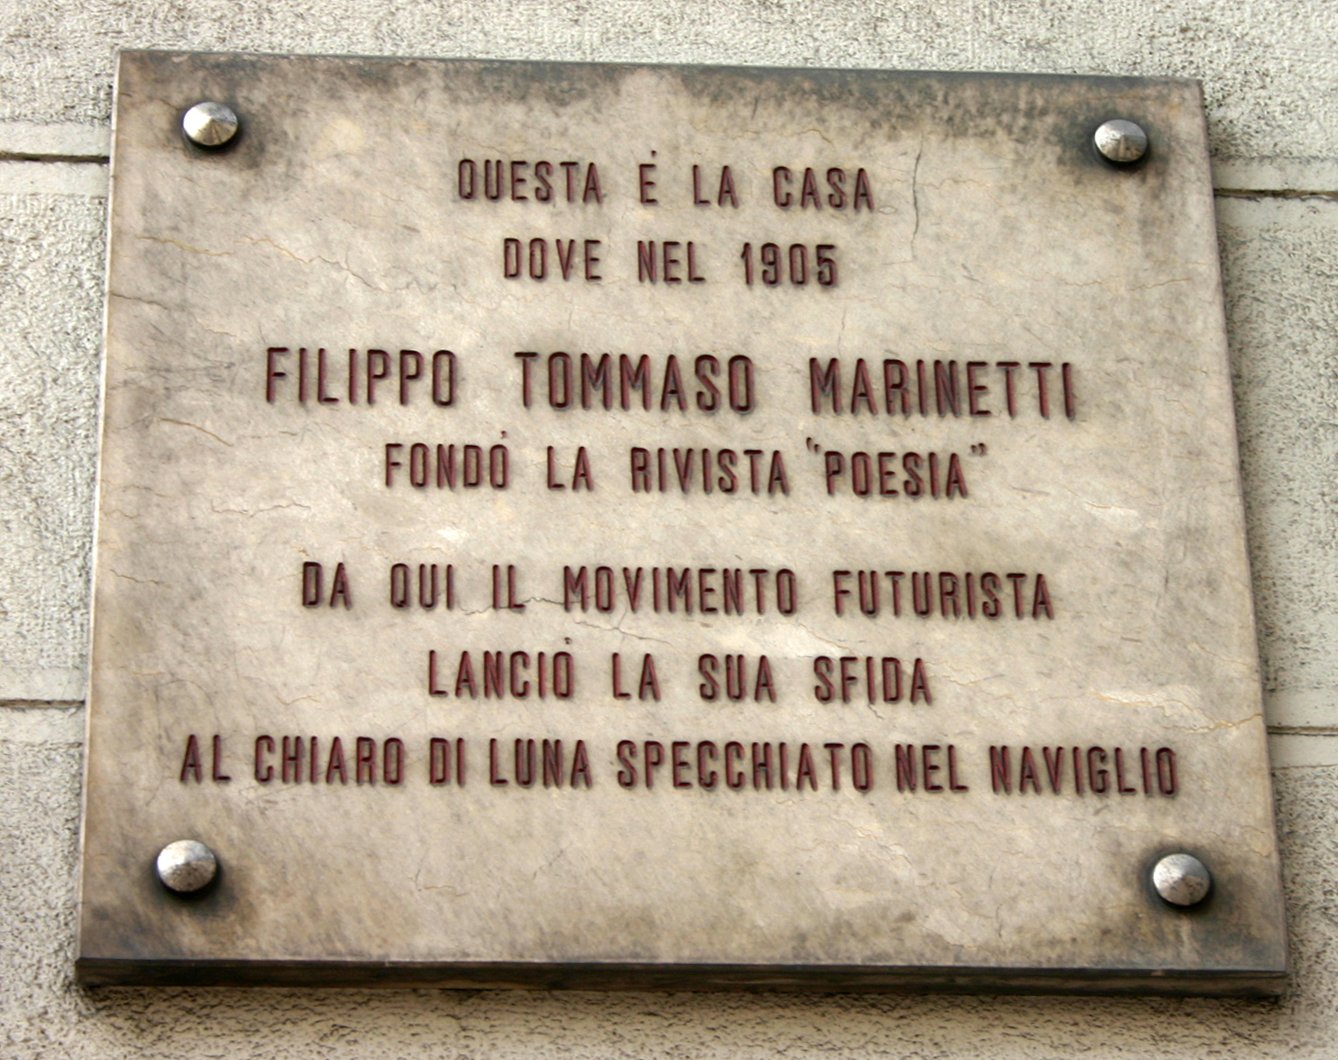 Placa que recuerda la casa milanesa en que Marinetti fundó la revista ''Poesia''.